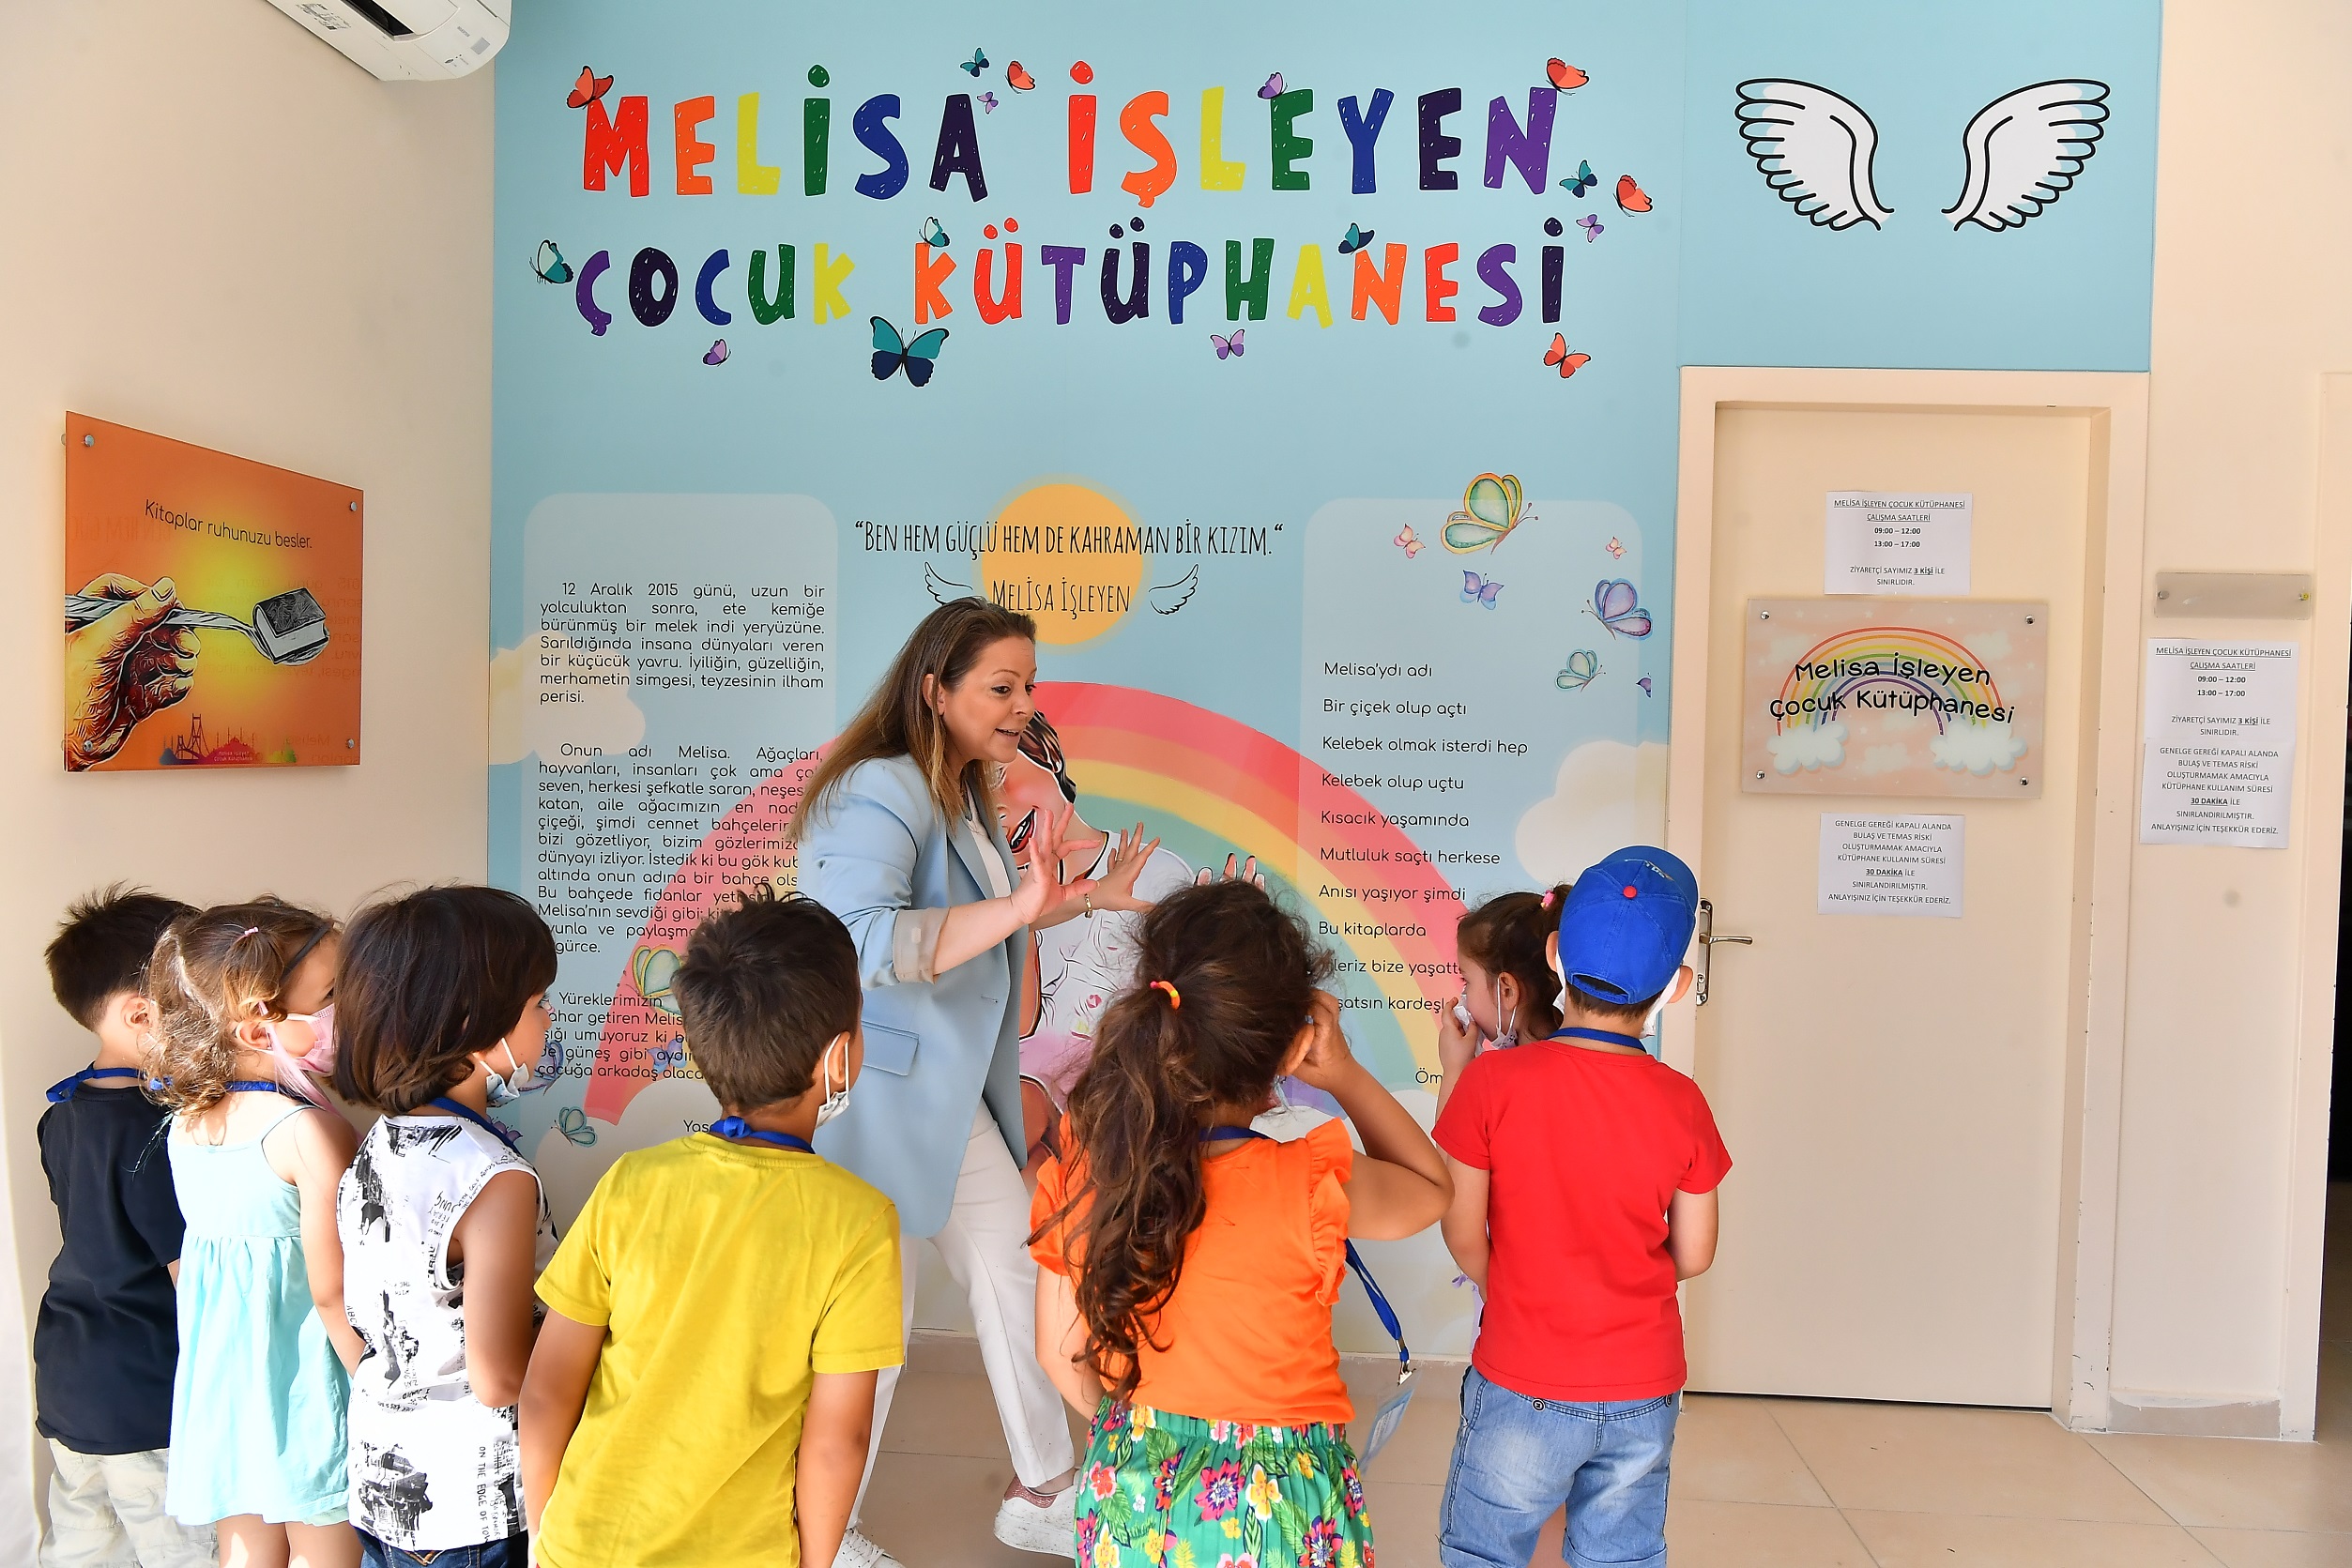  Beylikdüzü Belediyesi, Melisa İşleyen Çocuk Kütüphanesi’nde Etkinlik Düzenledi